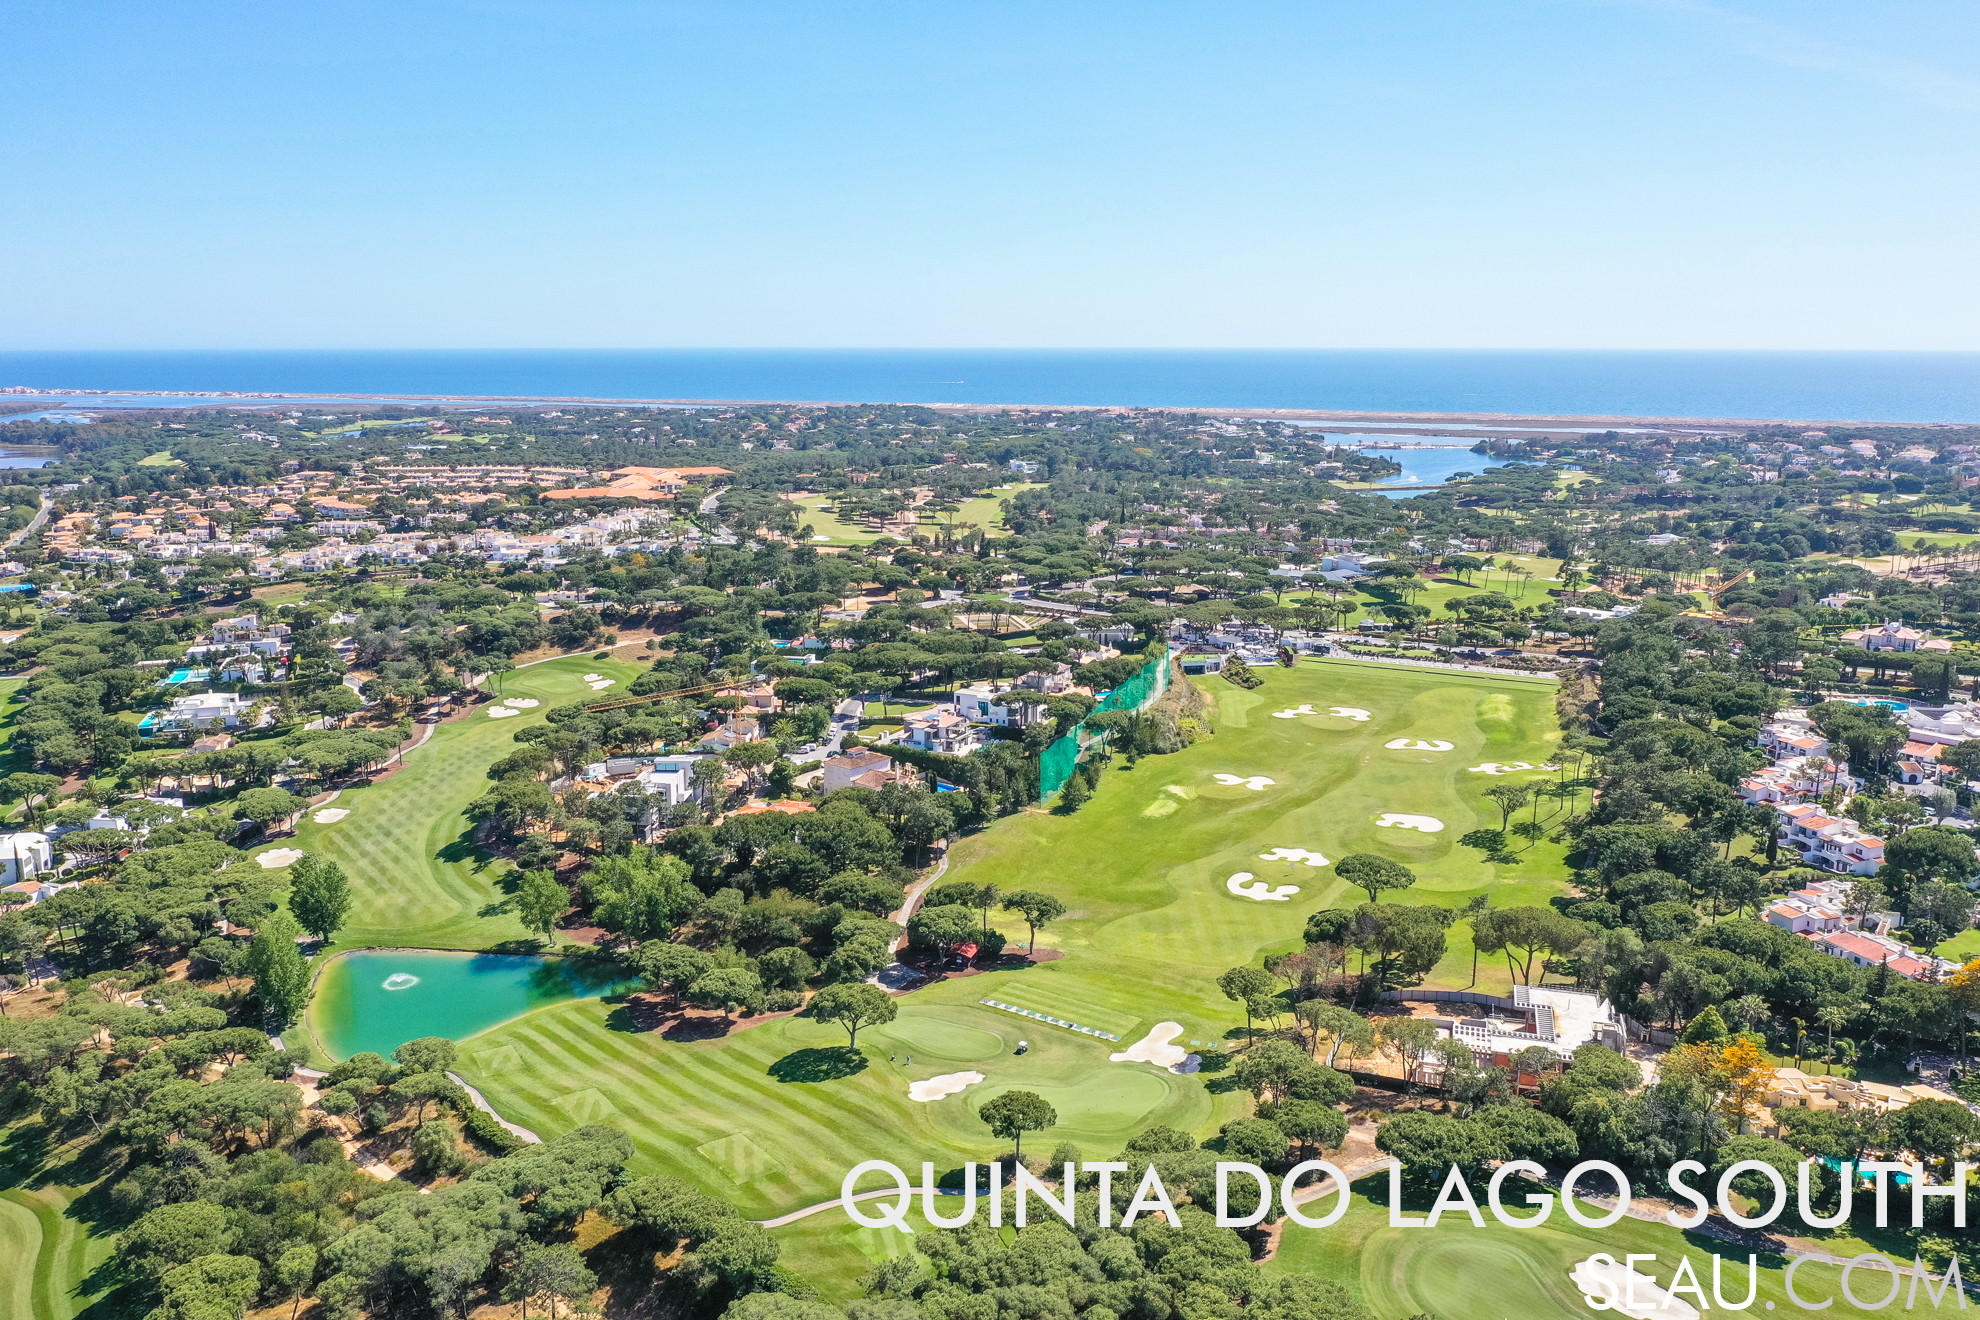 Quinta do Lago Sul is het Quinta do Lago-gebied ten zuiden van de 4e rotonde, waar we de golfbaan Quinta do Lago Sul, het Quinta do Lago-meer, de toegangsbrug naar het strand en de Ria Formosa vinden. In deze afbeelding kunnen we de golftraining, de golfbaan, de huizen en enkele urbanisaties in Quinta do Lago uitlichten. Op de achtergrond zien we het meer en de zee